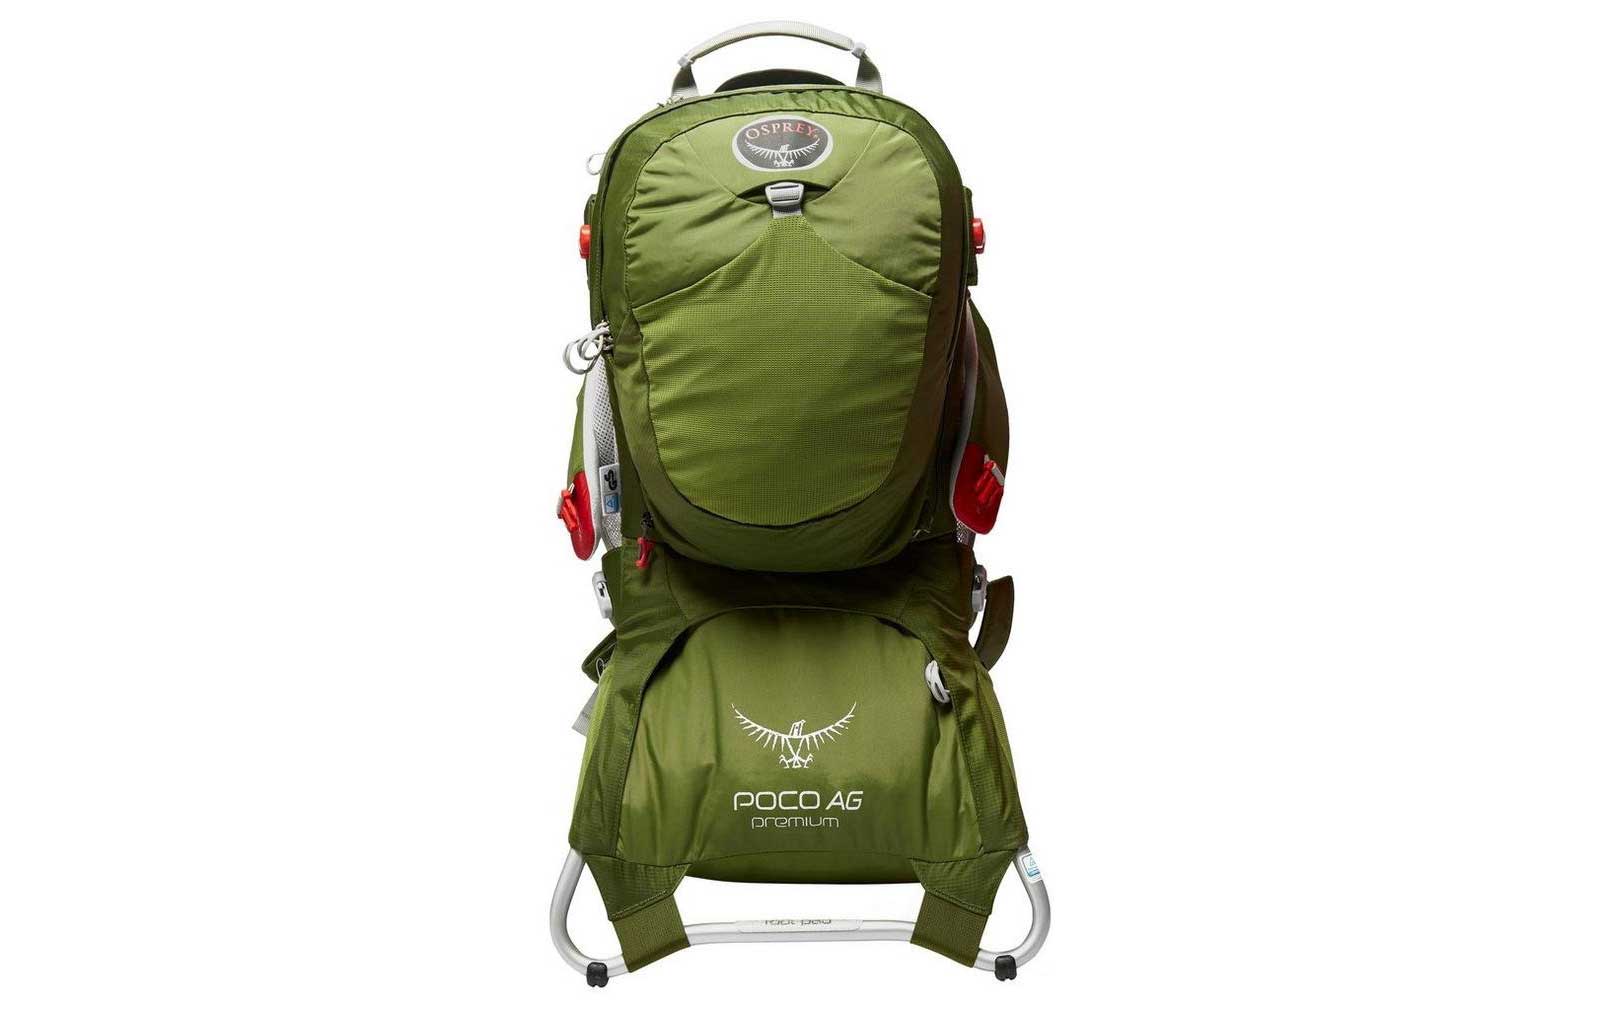 Porte bébé de randonnée pas cher - Avis, prix et test pour choisir